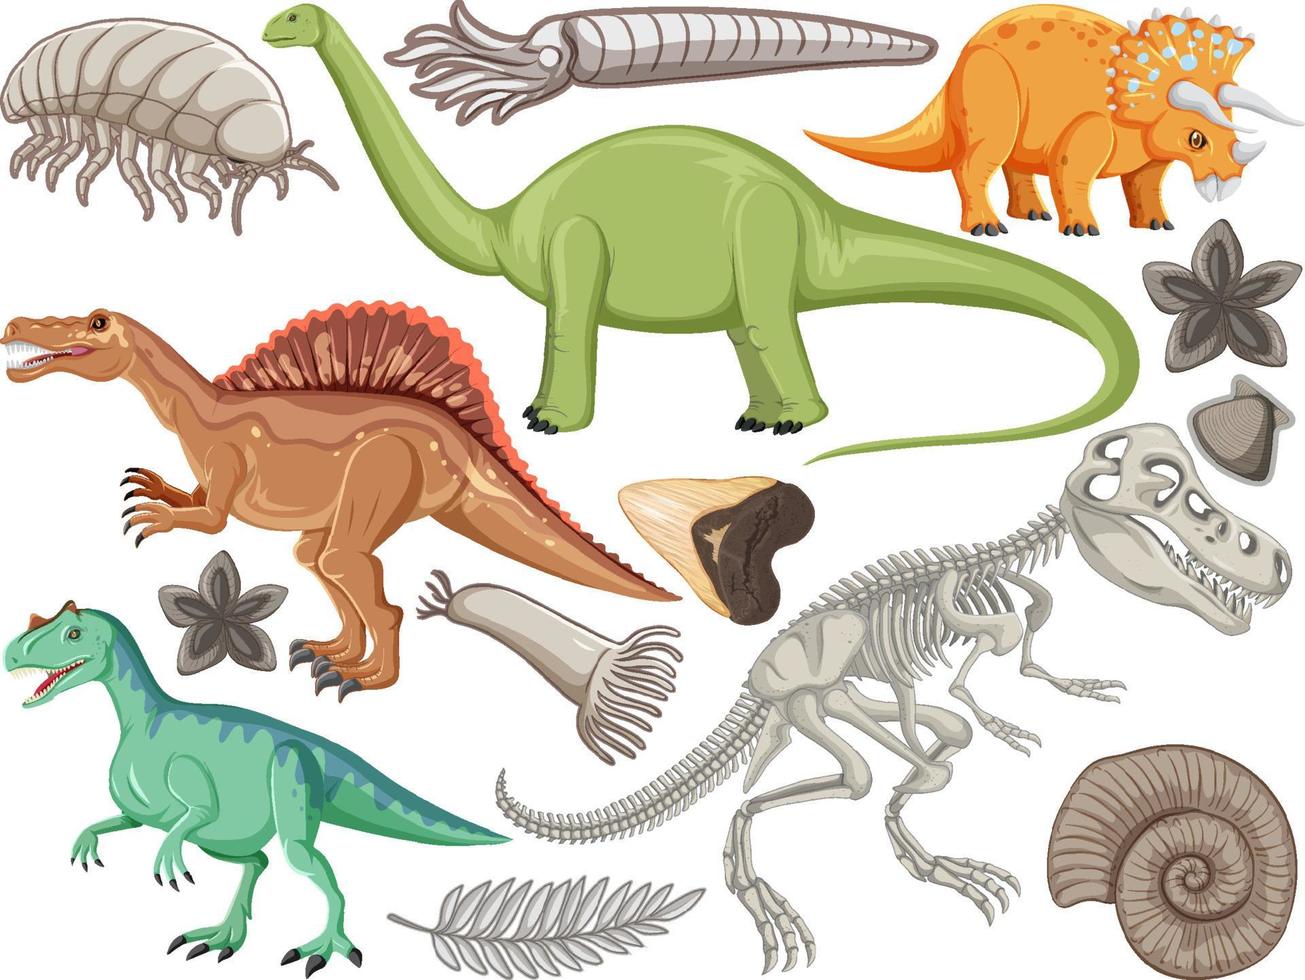 set van verschillende prehistorische dinosaurusdieren vector